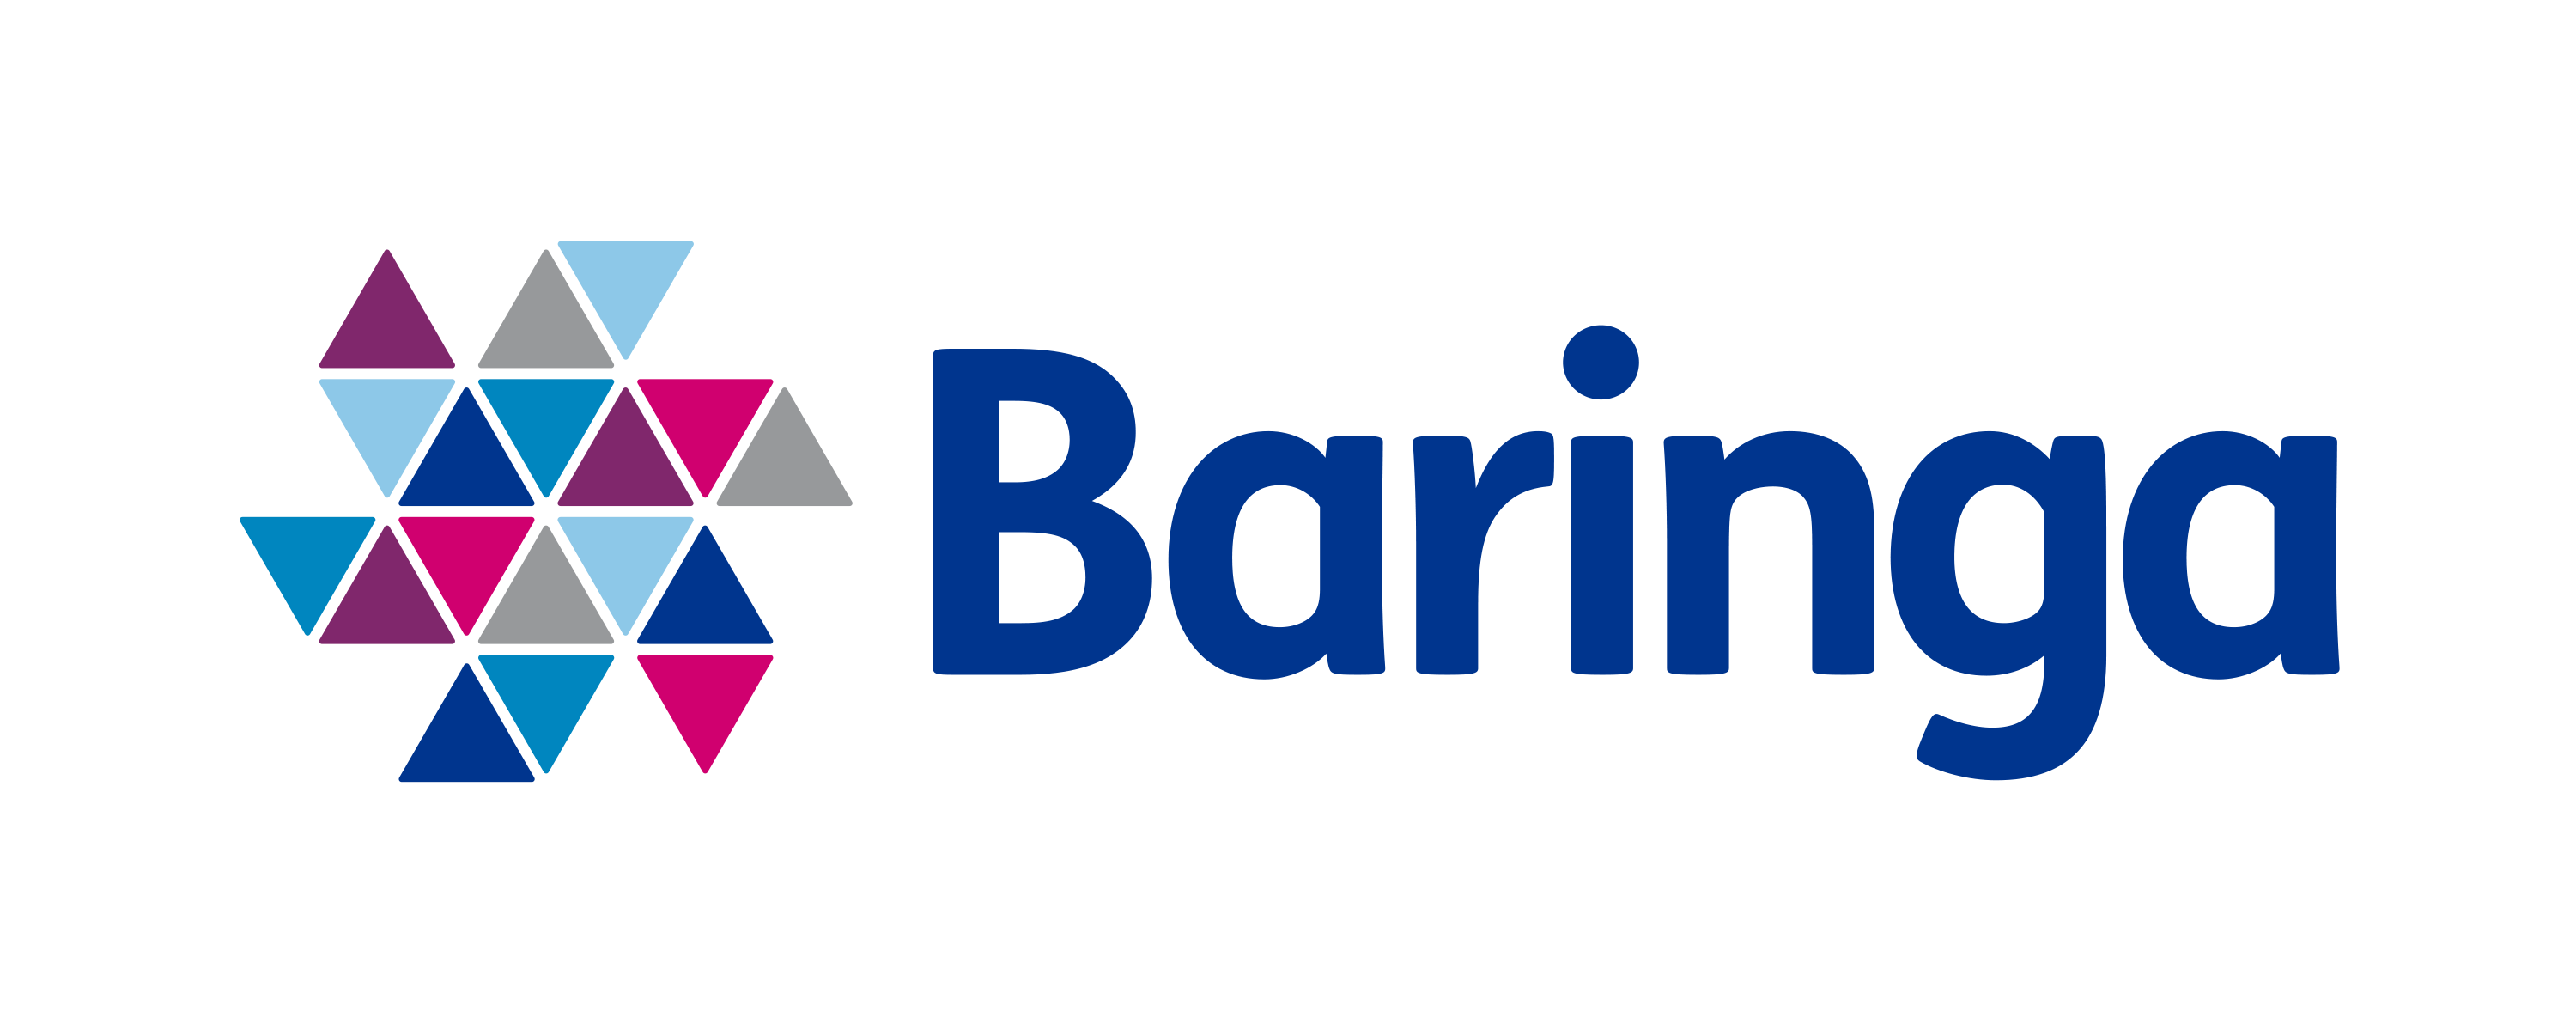 Baringa logo